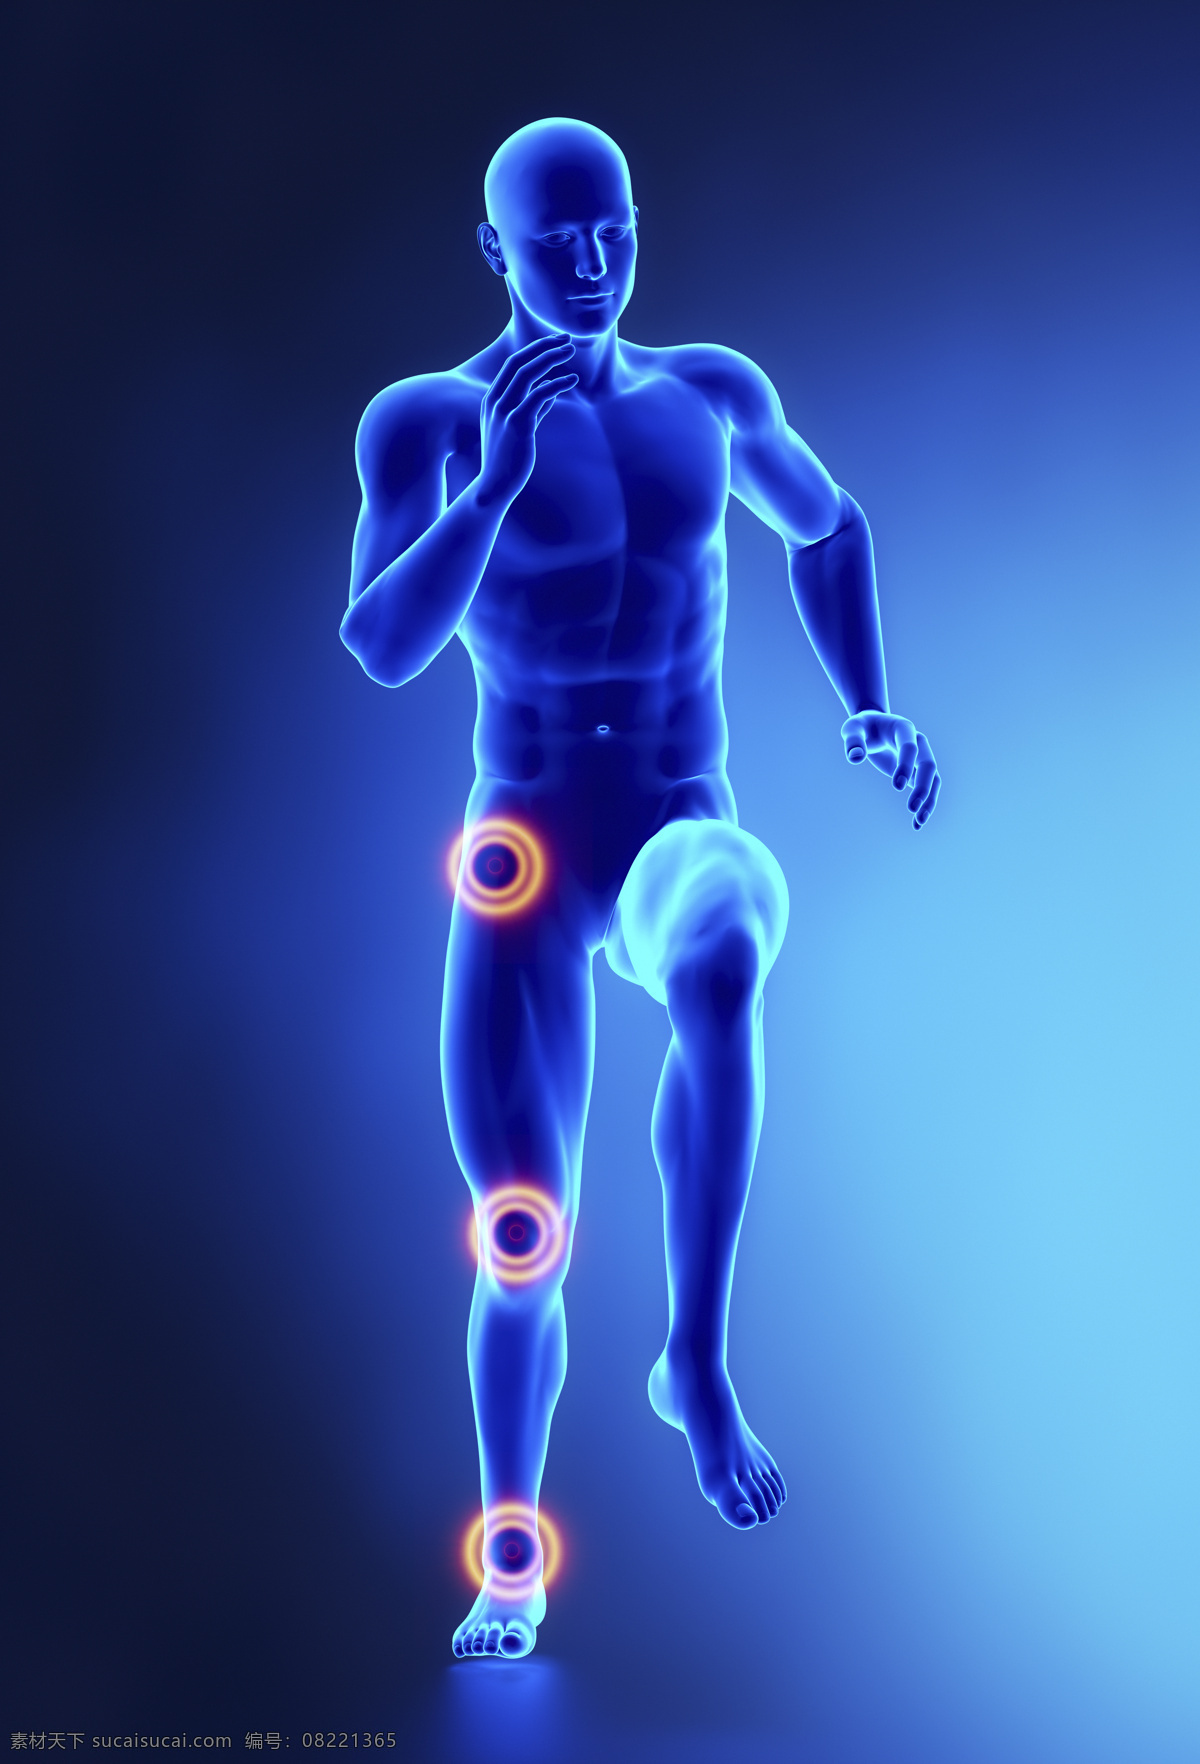 奔跑 时 男性 膝关节 男性人体器官 人体器官 医疗科学 医学 人体器官图 人物图片